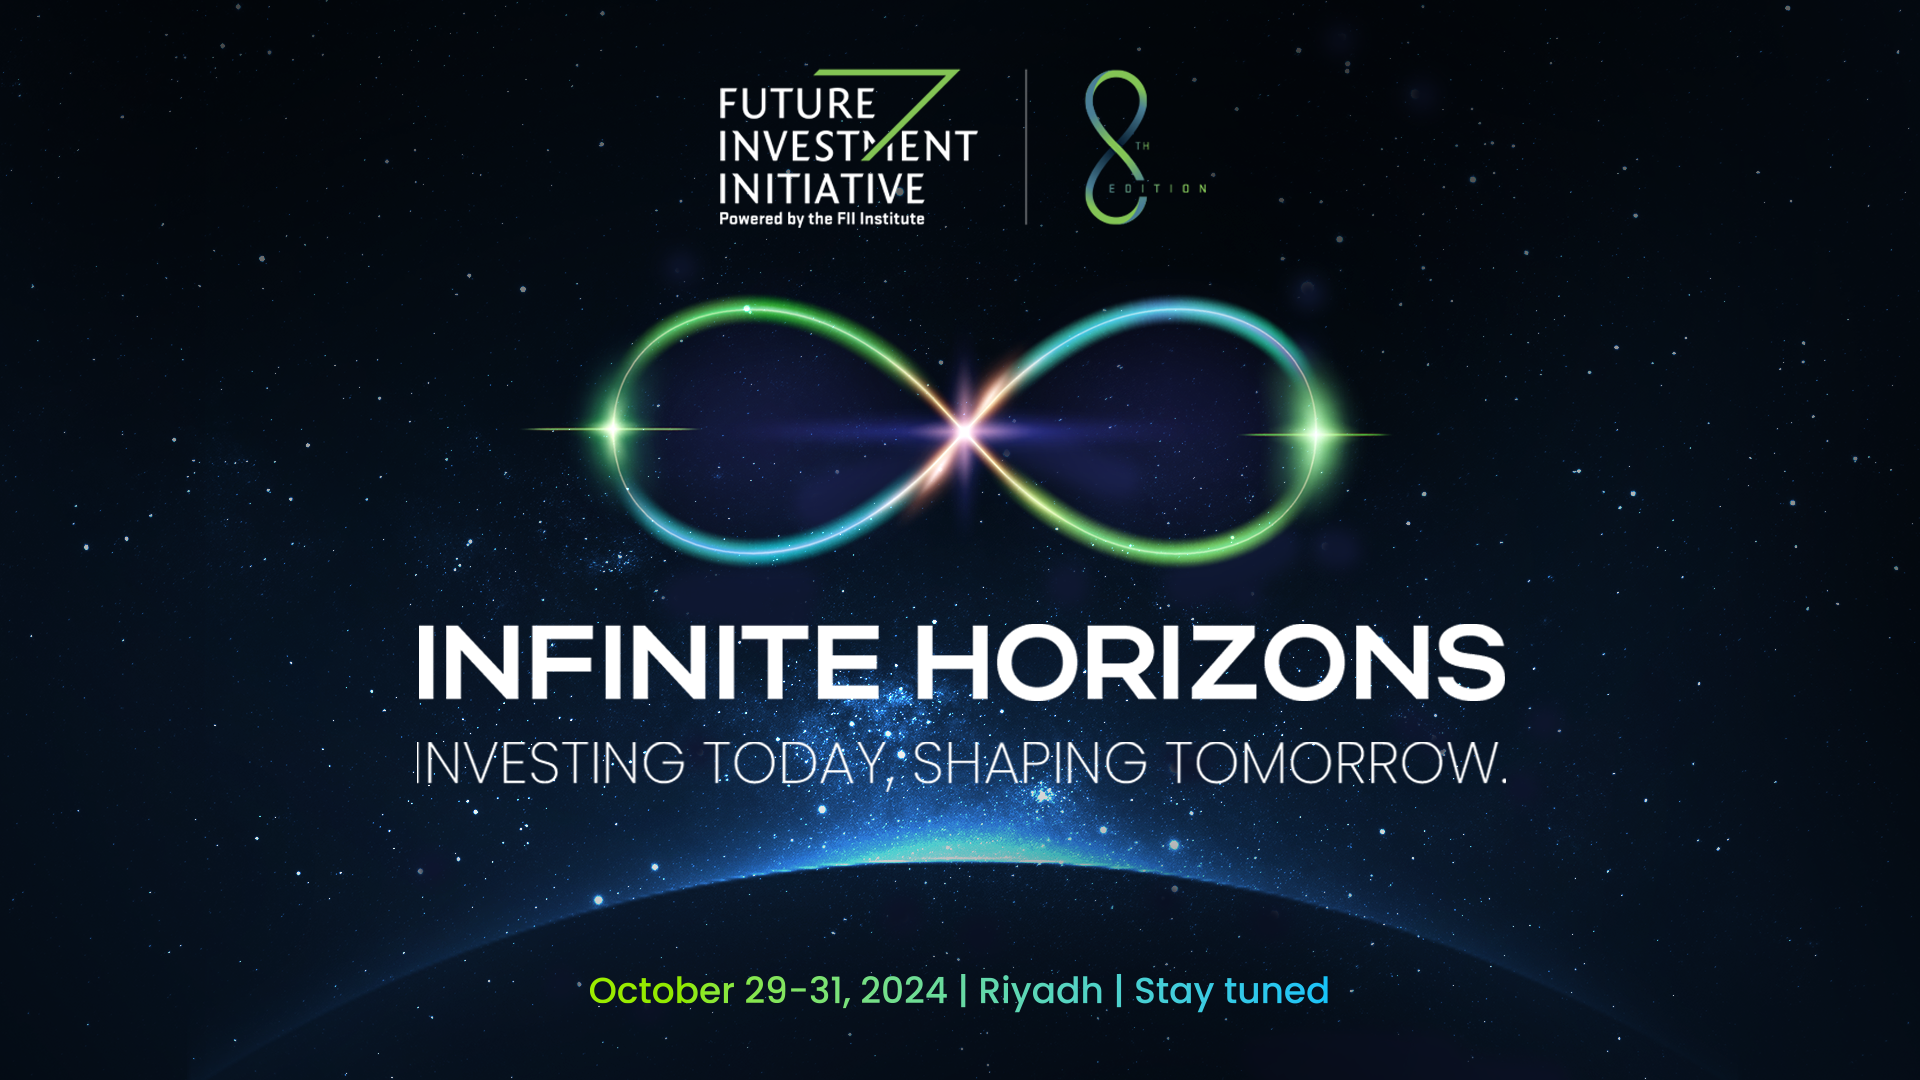 第 8 届未来投资倡议峰会主题揭晓：“无限视野：投资当下，塑造未来”（Infinite Horizons: